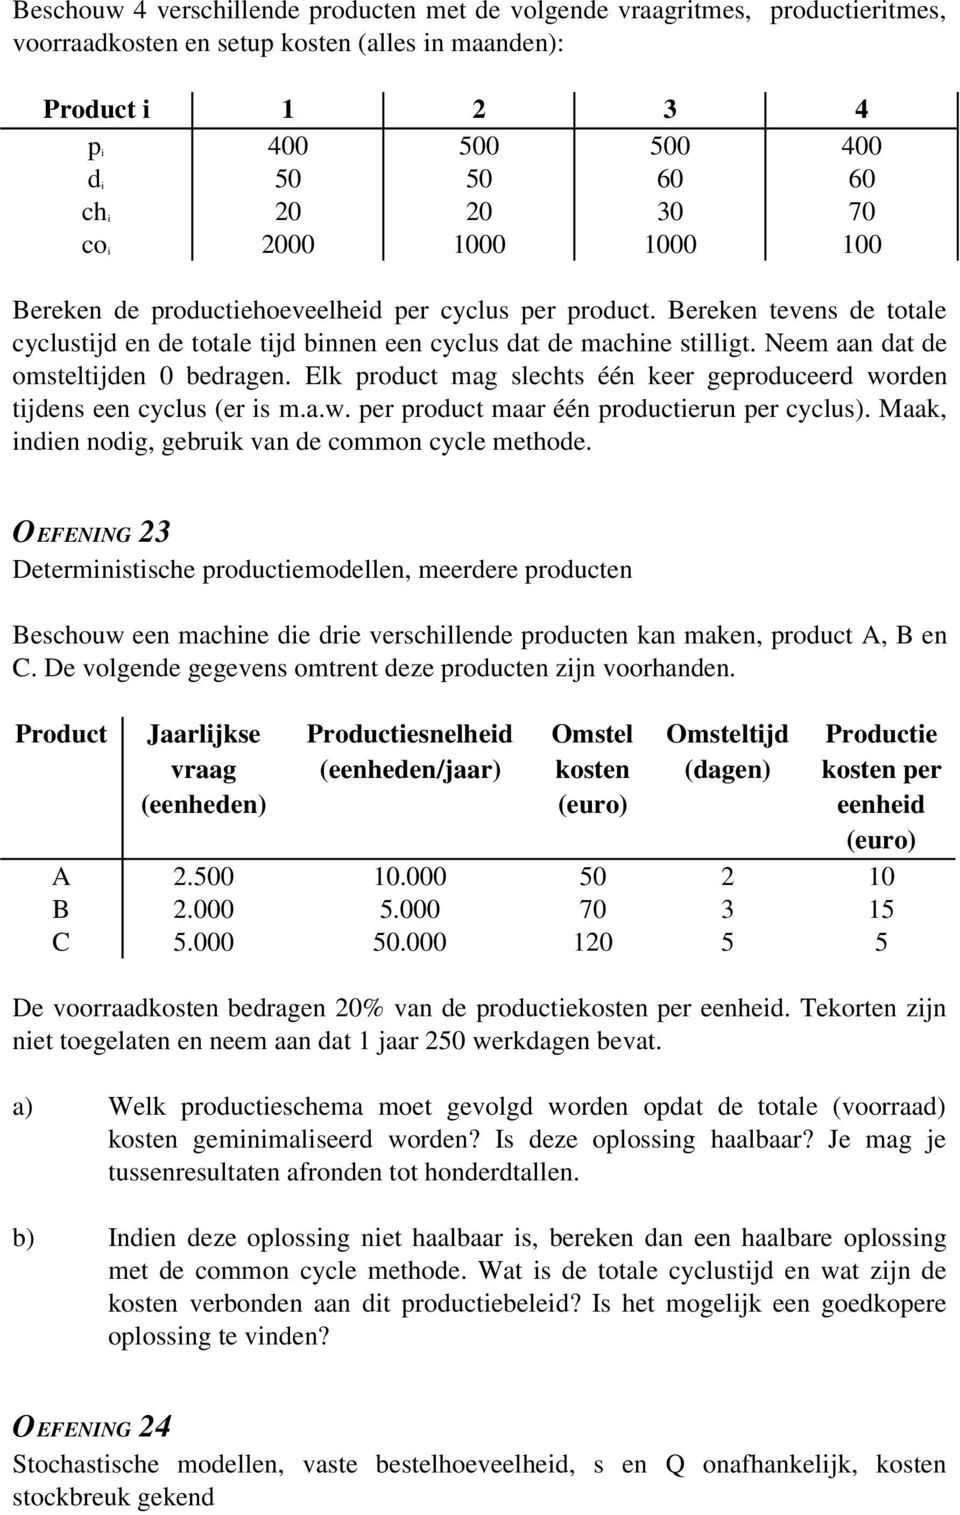 Neem aan dat de omsteltijden 0 bedragen. Elk product mag slechts één keer geproduceerd worden tijdens een cyclus (er is m.a.w. per product maar één productierun per cyclus).